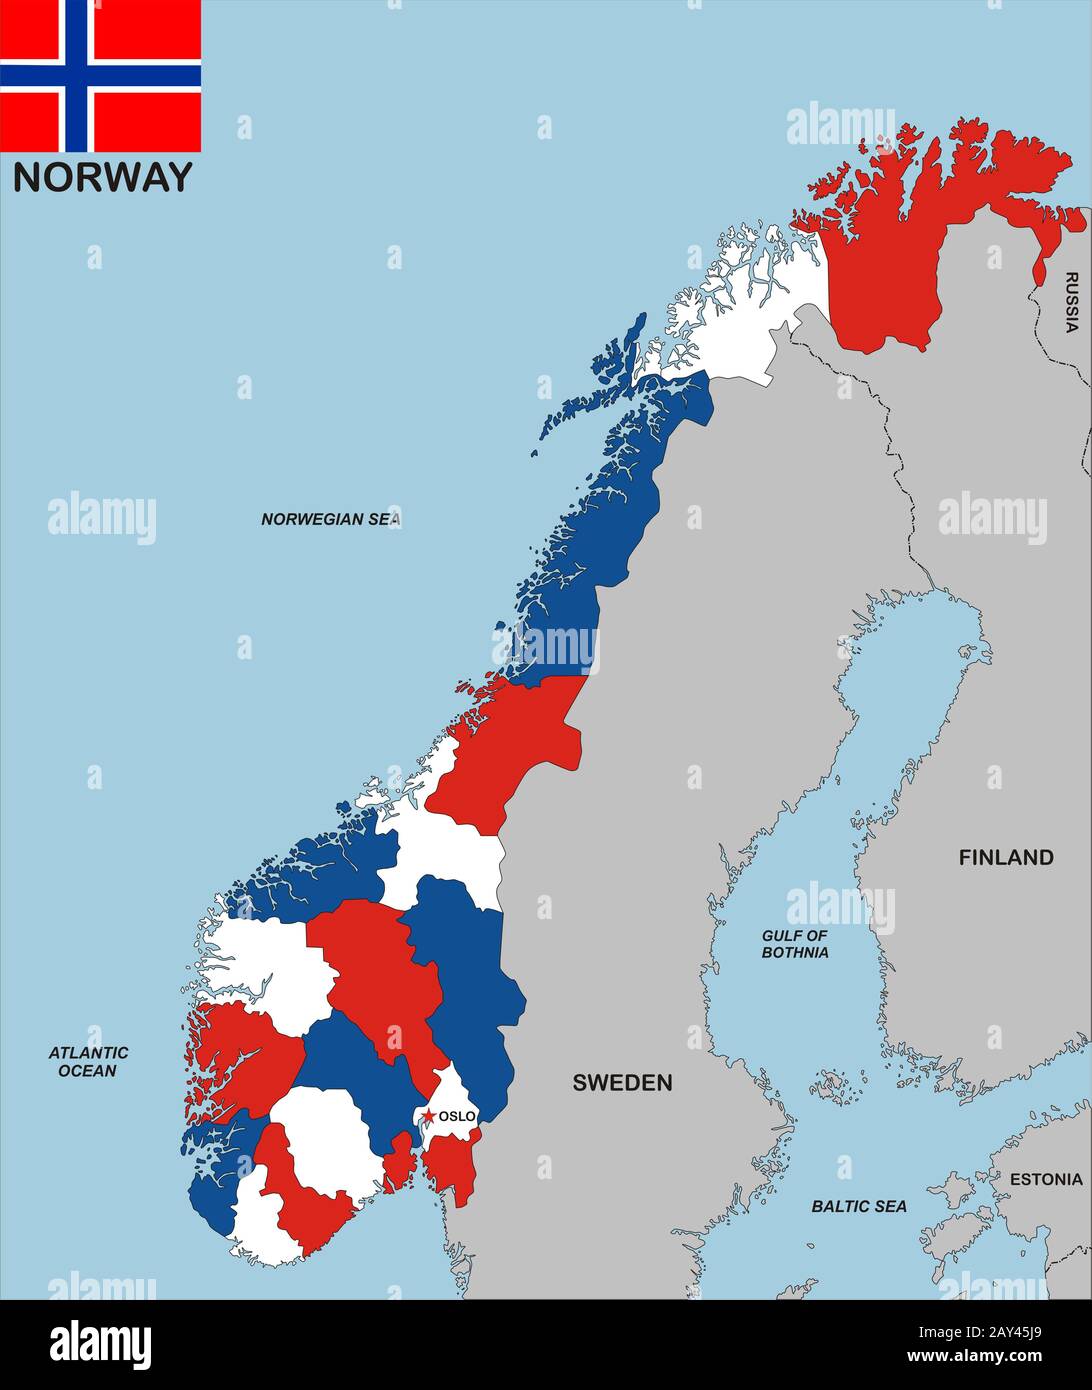 mapa-de-noruega-2ay45j9.jpg